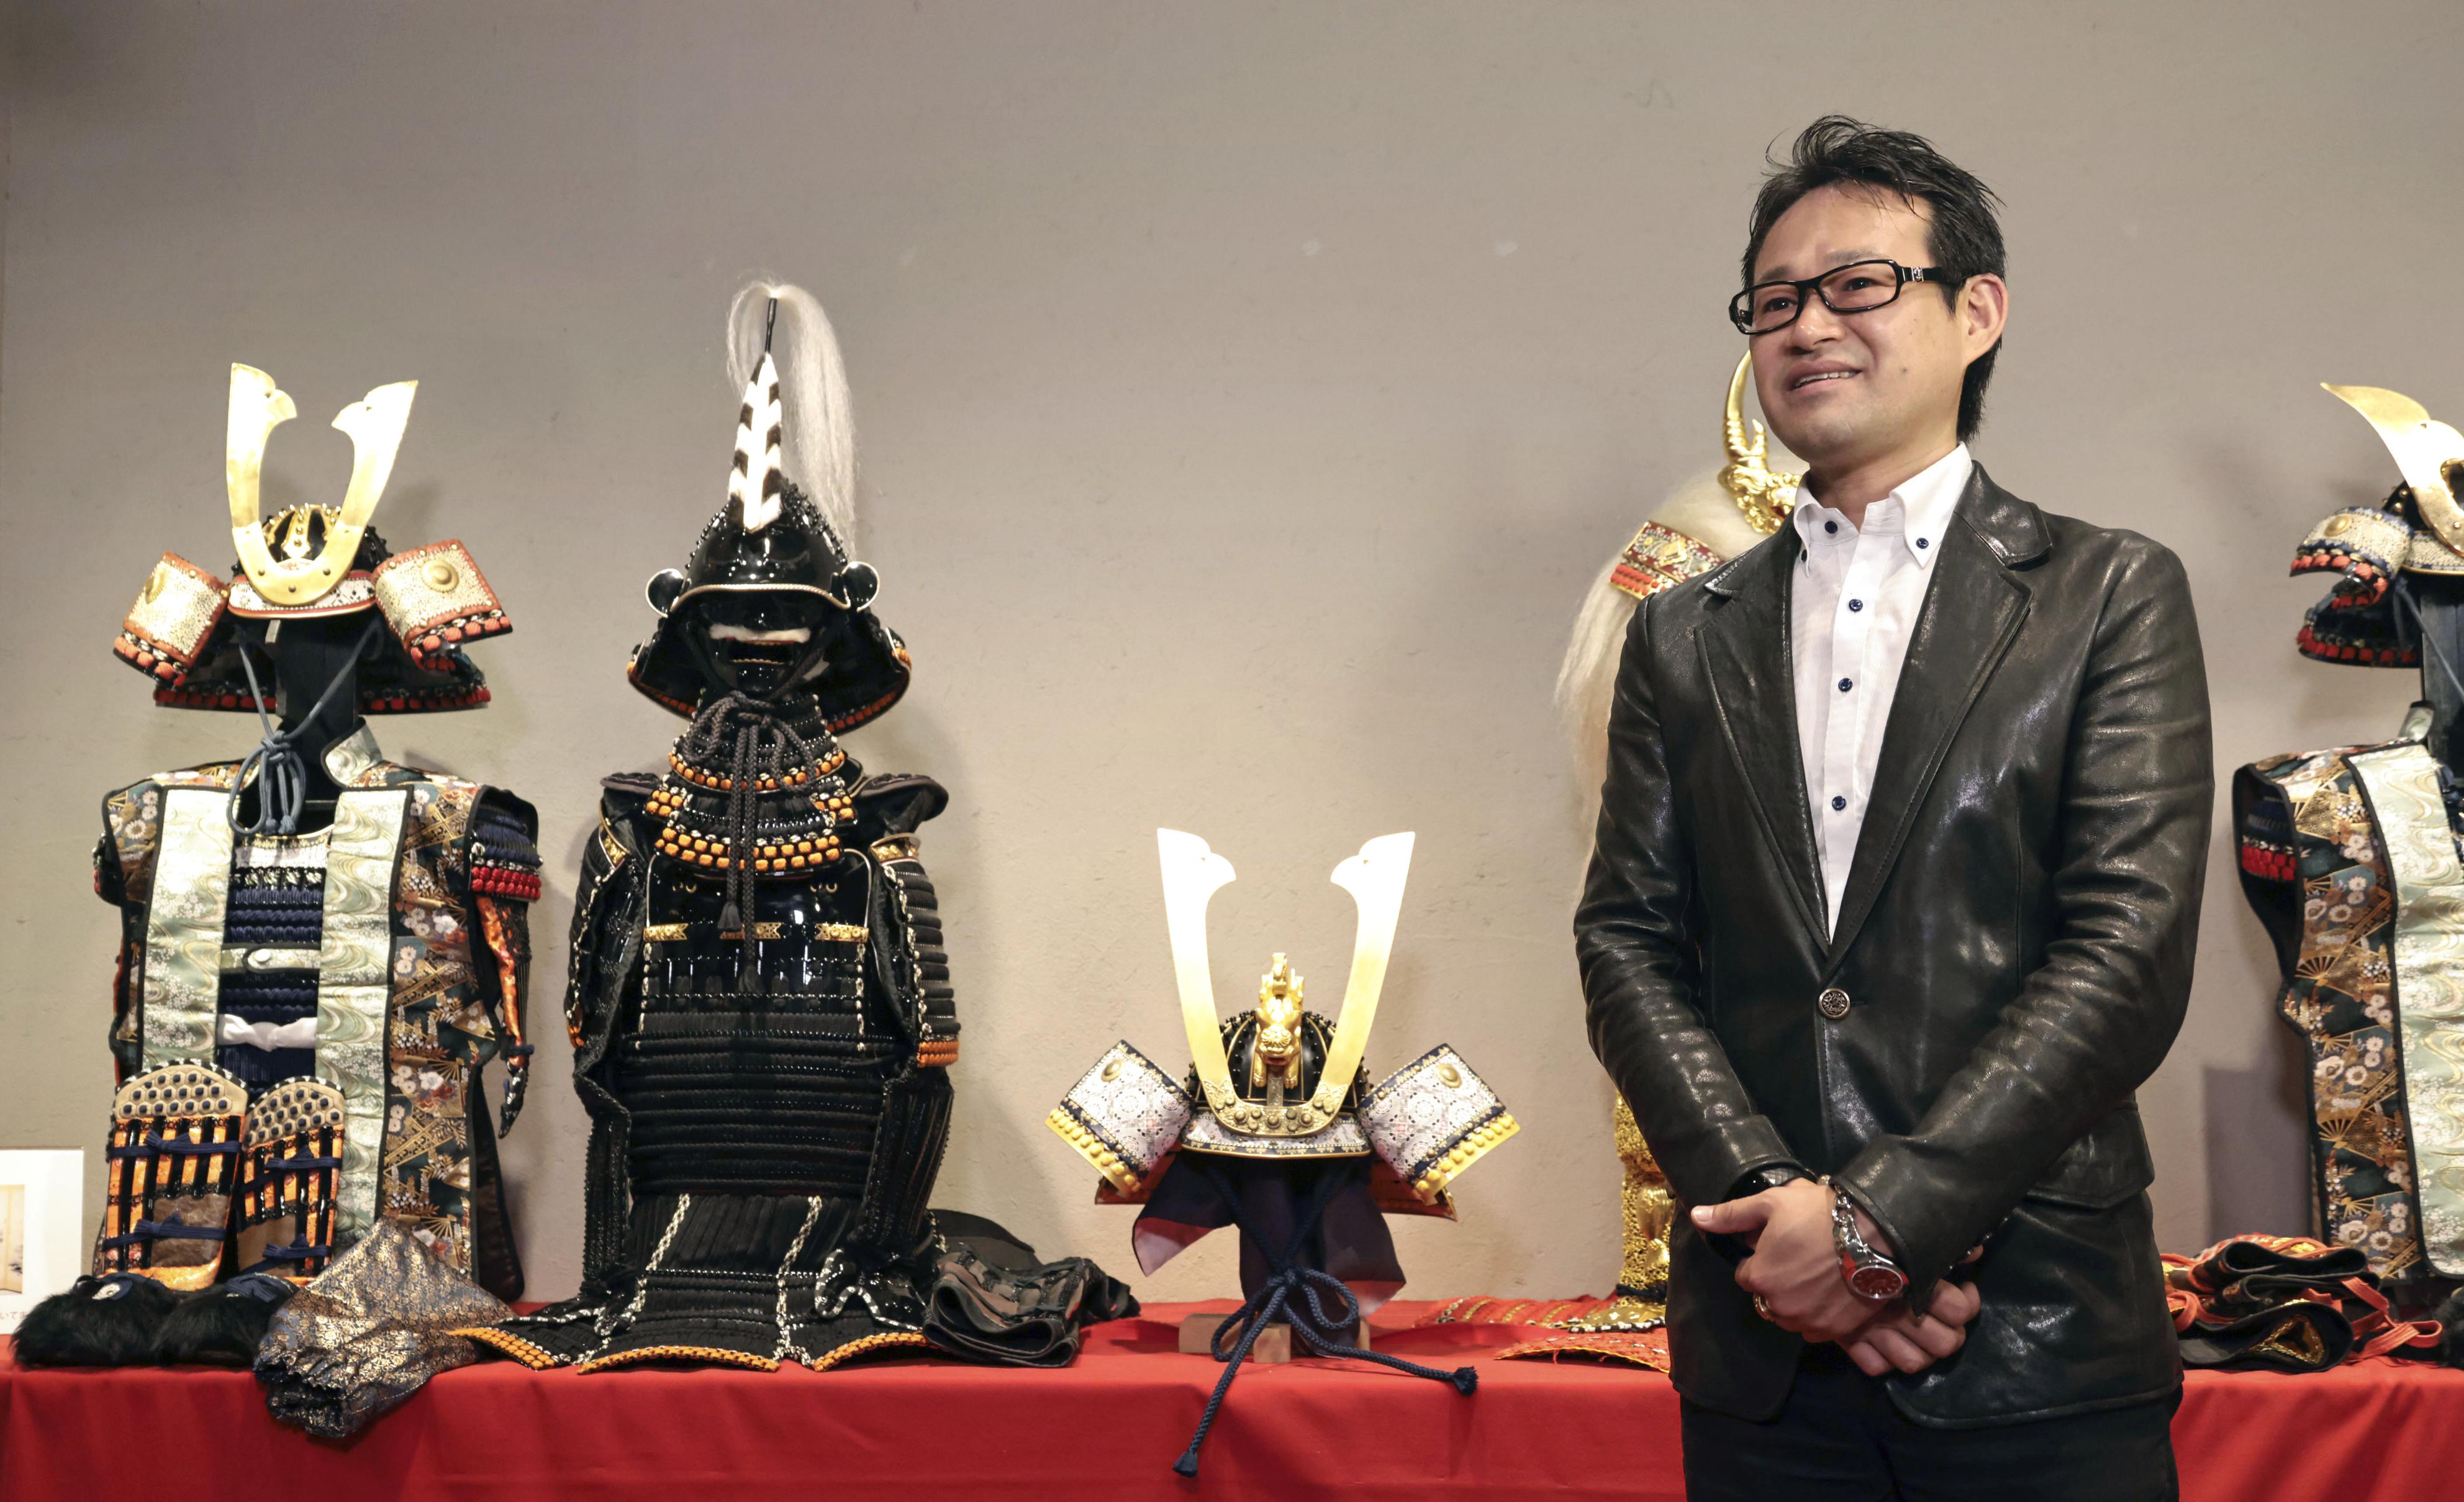 大谷翔平の「かぶと」展示 東京に甲冑の店オープン - 産経ニュース